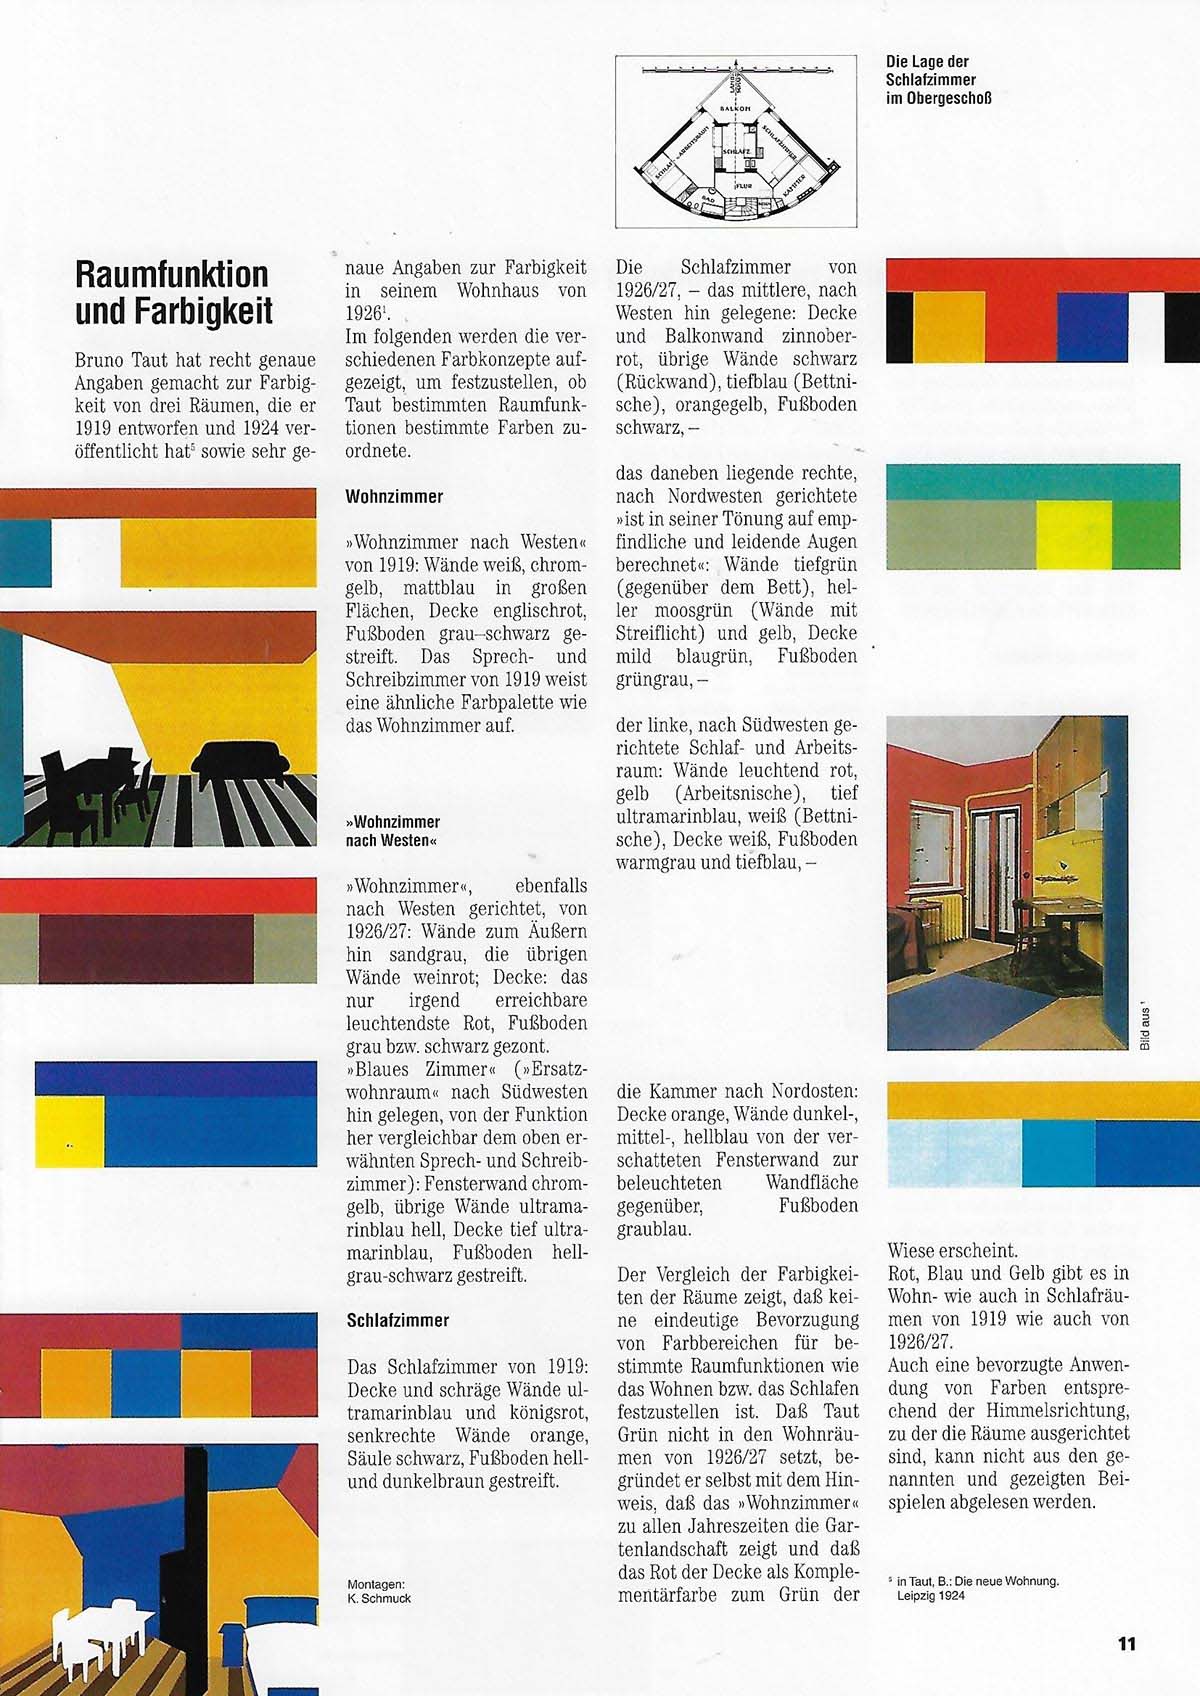 Bild Buchseite Ein Wohnhaus von Bruno Taut aus dem Buch Farbe und Architektur 2. Eine Farbenlehre für die Praxis. Friedrich Schmuck